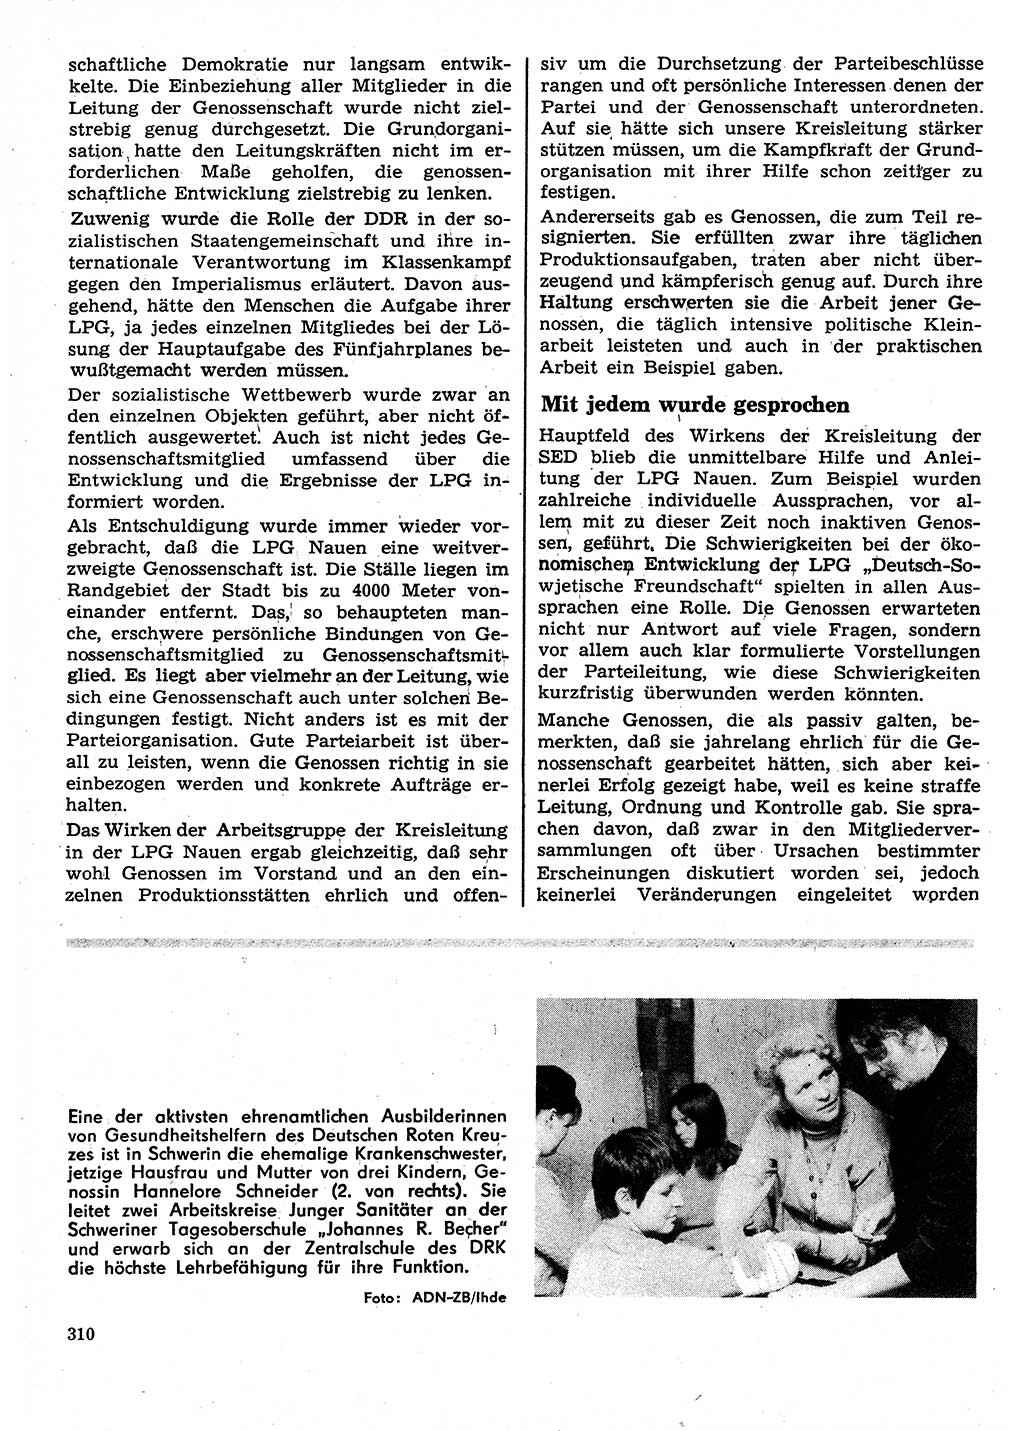 Neuer Weg (NW), Organ des Zentralkomitees (ZK) der SED (Sozialistische Einheitspartei Deutschlands) für Fragen des Parteilebens, 27. Jahrgang [Deutsche Demokratische Republik (DDR)] 1972, Seite 310 (NW ZK SED DDR 1972, S. 310)